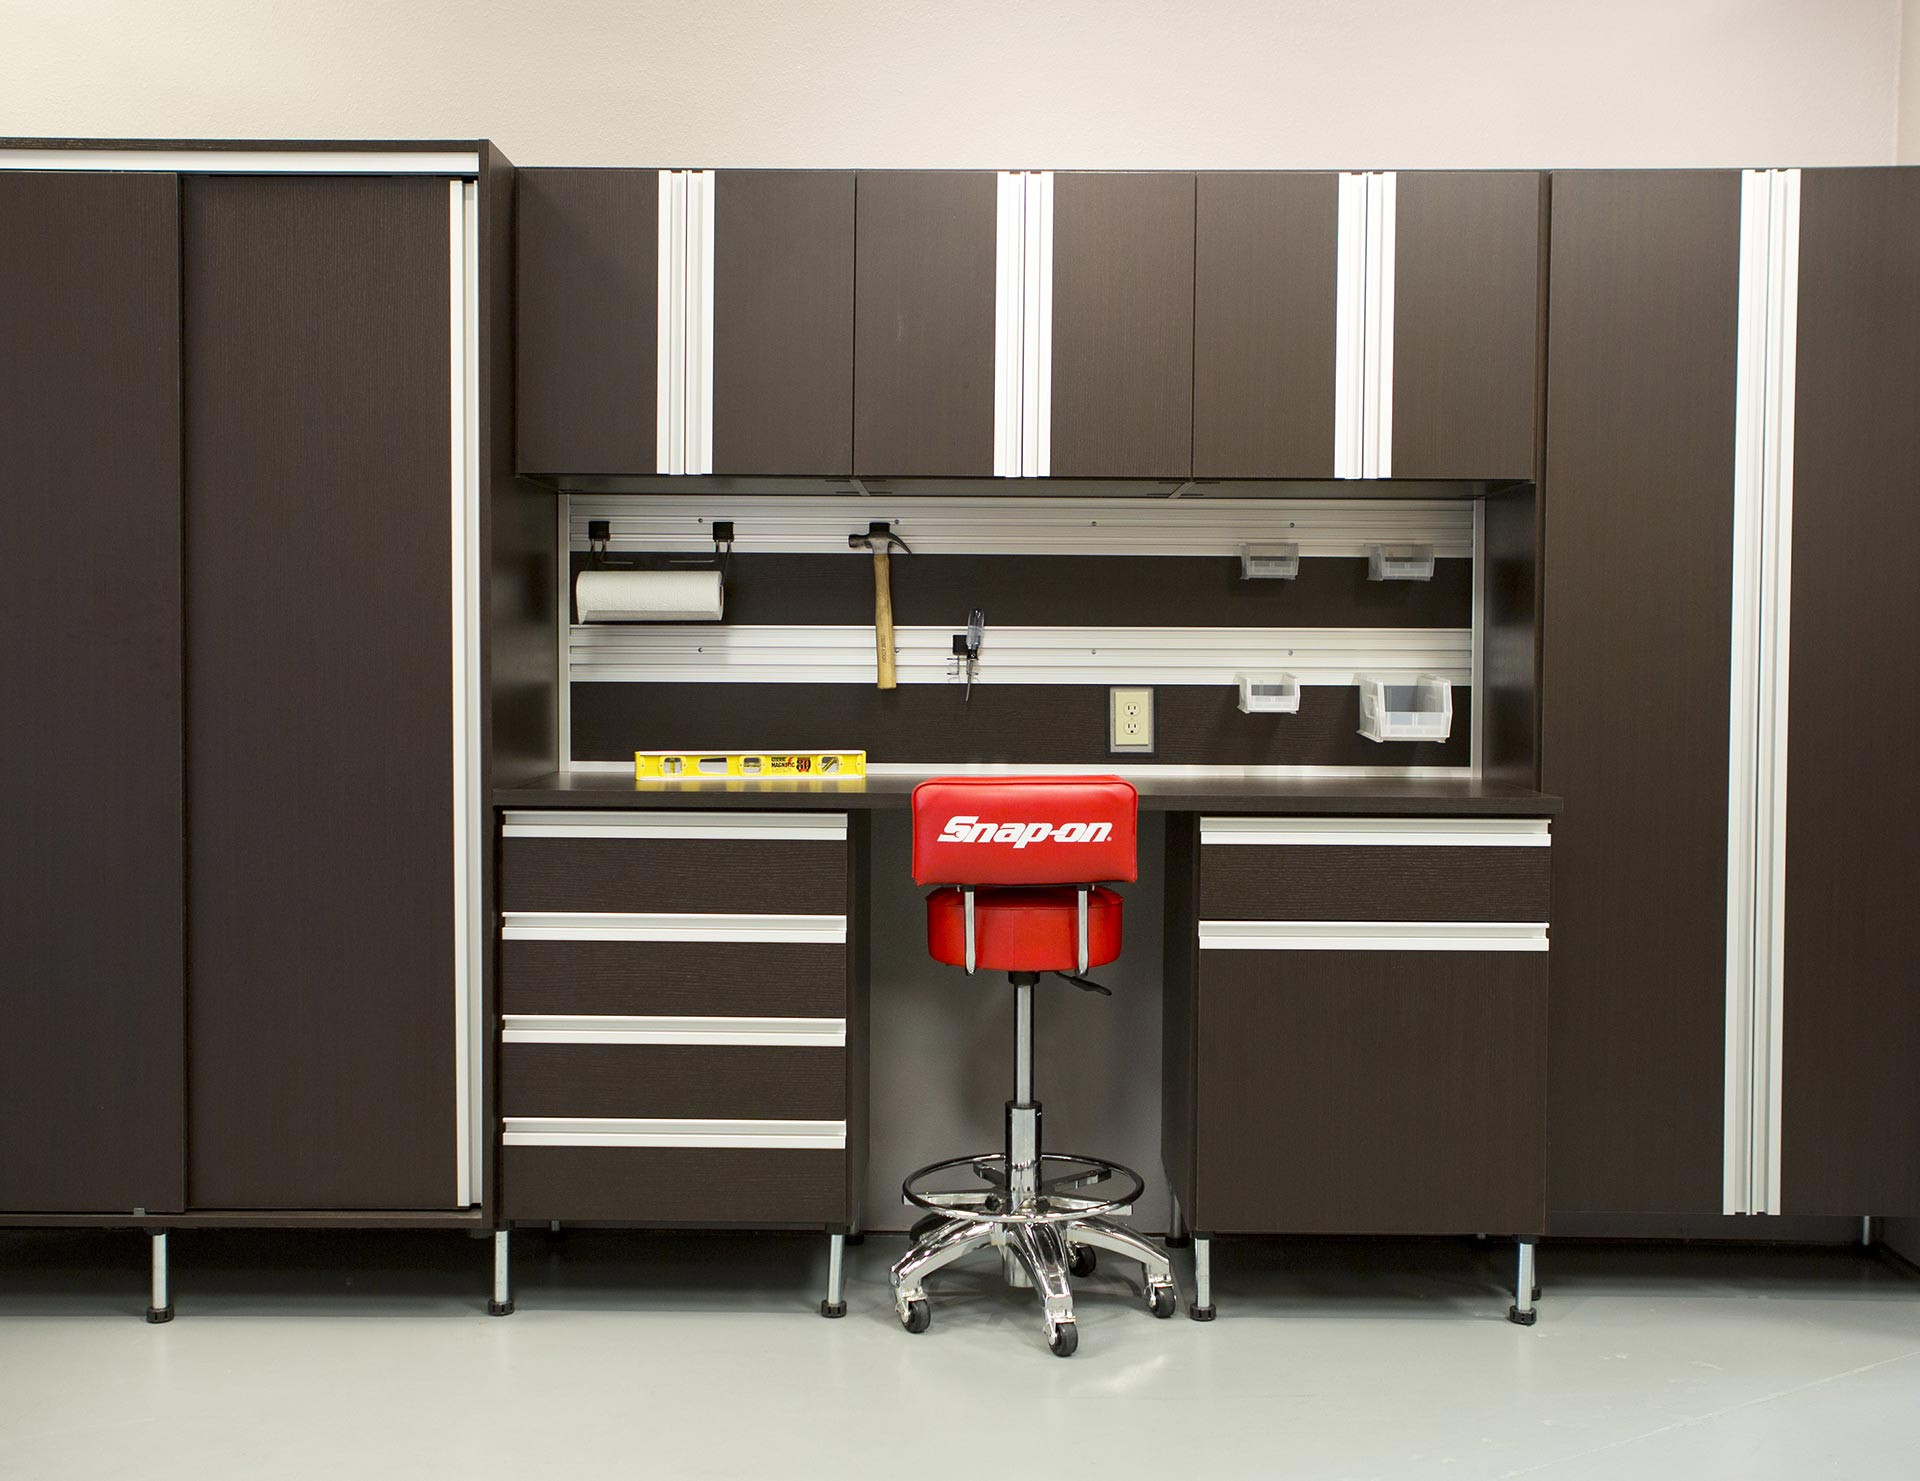 Garage Cabinet Organization
 Workbench Storage Organization & Design Solutions for Your